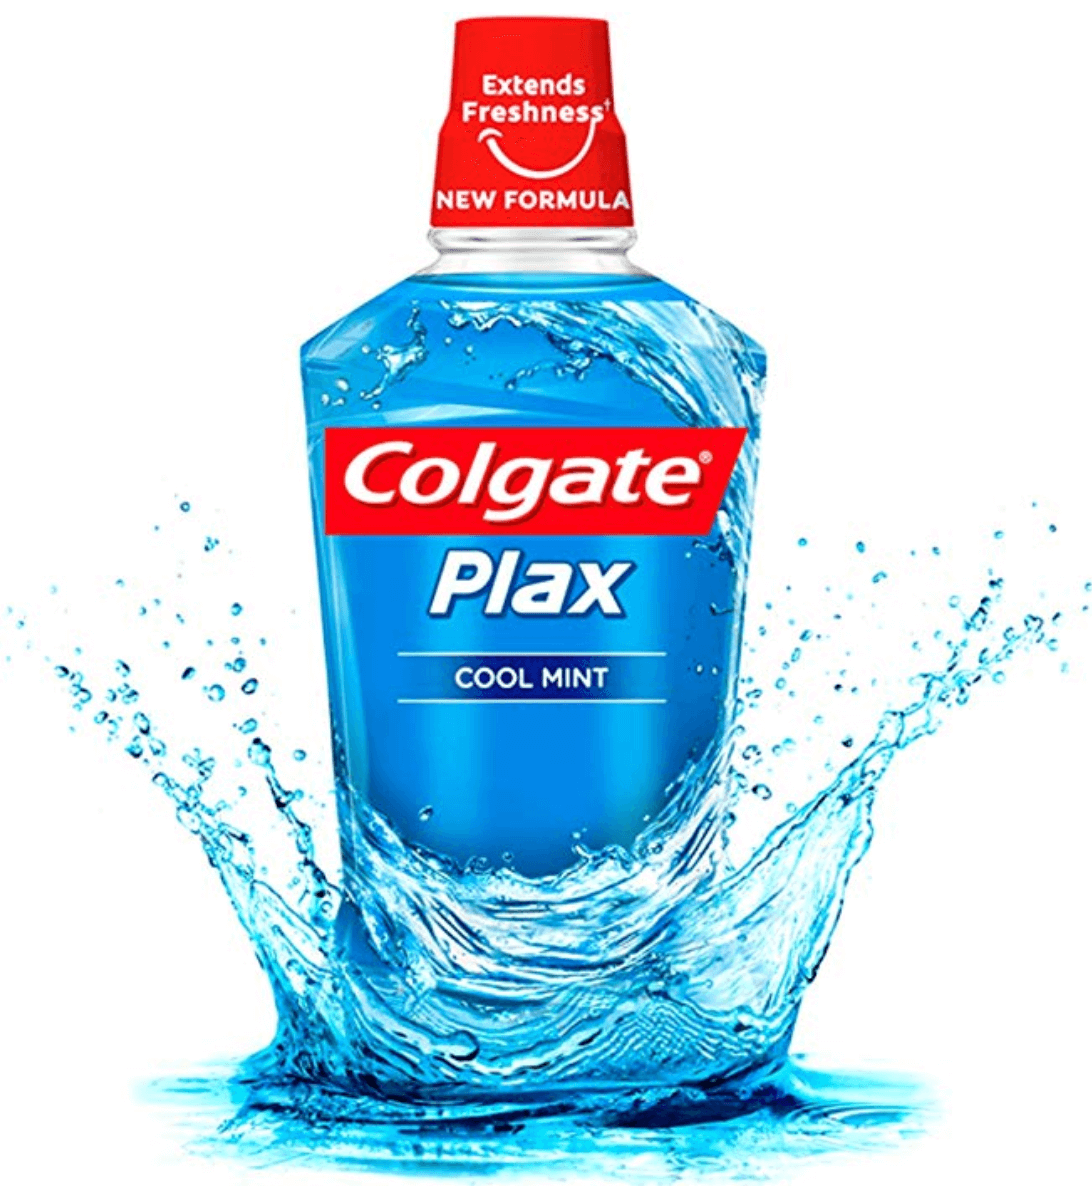 Colgate Plax Cool Mint Mouthwash 500ml